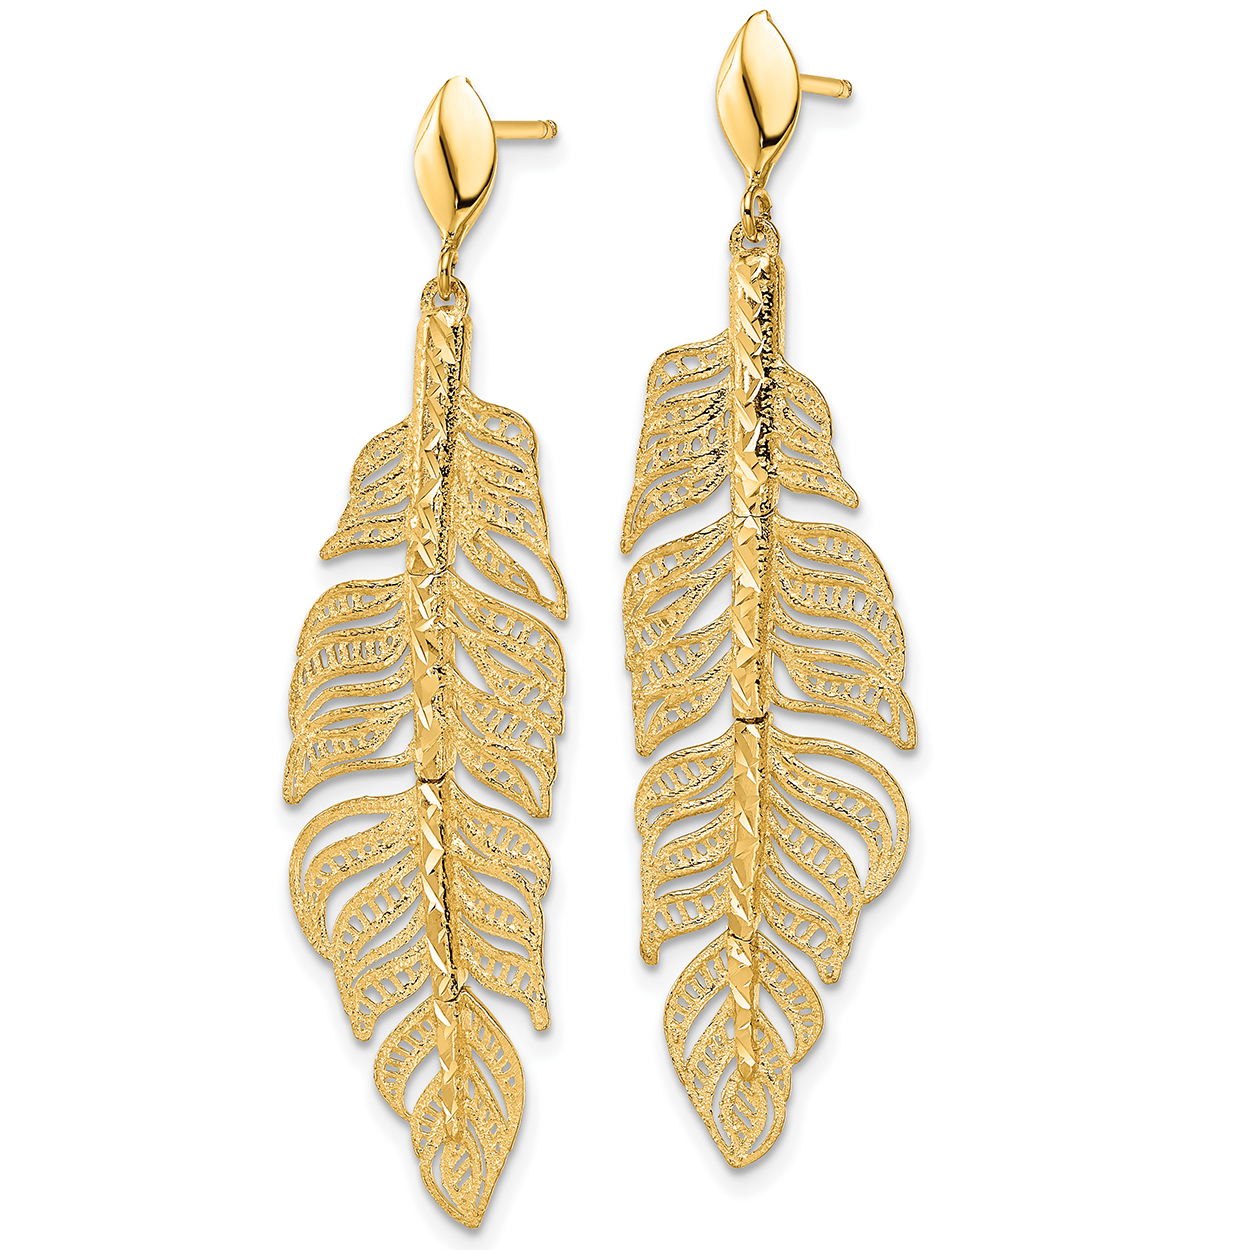 Kendra Scott Anna Filigree 14k Gold Over Brass Drop Earrings - Gold : Target